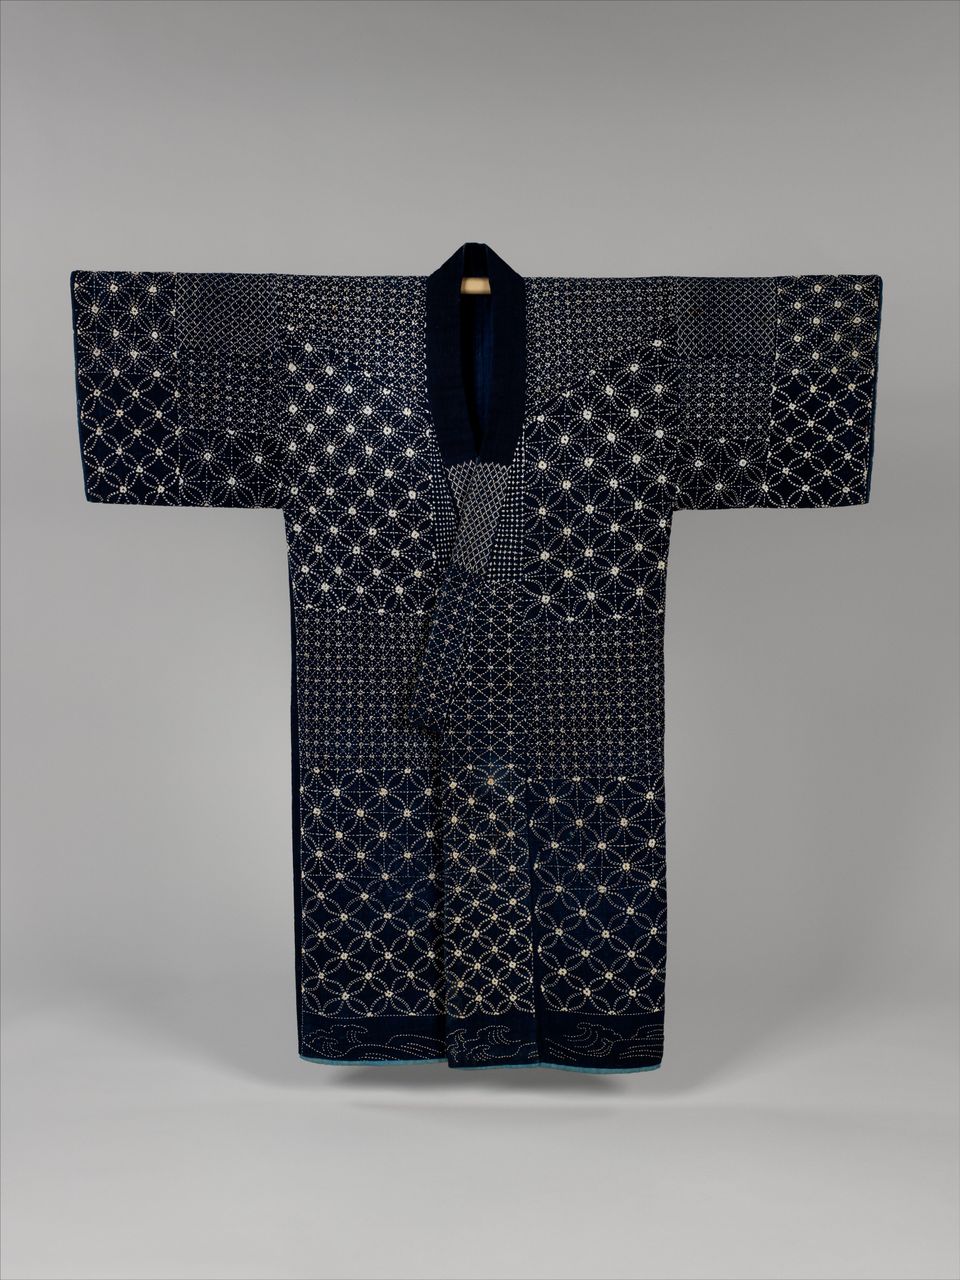 Sashiko embroidered kimono from the late 19. century.